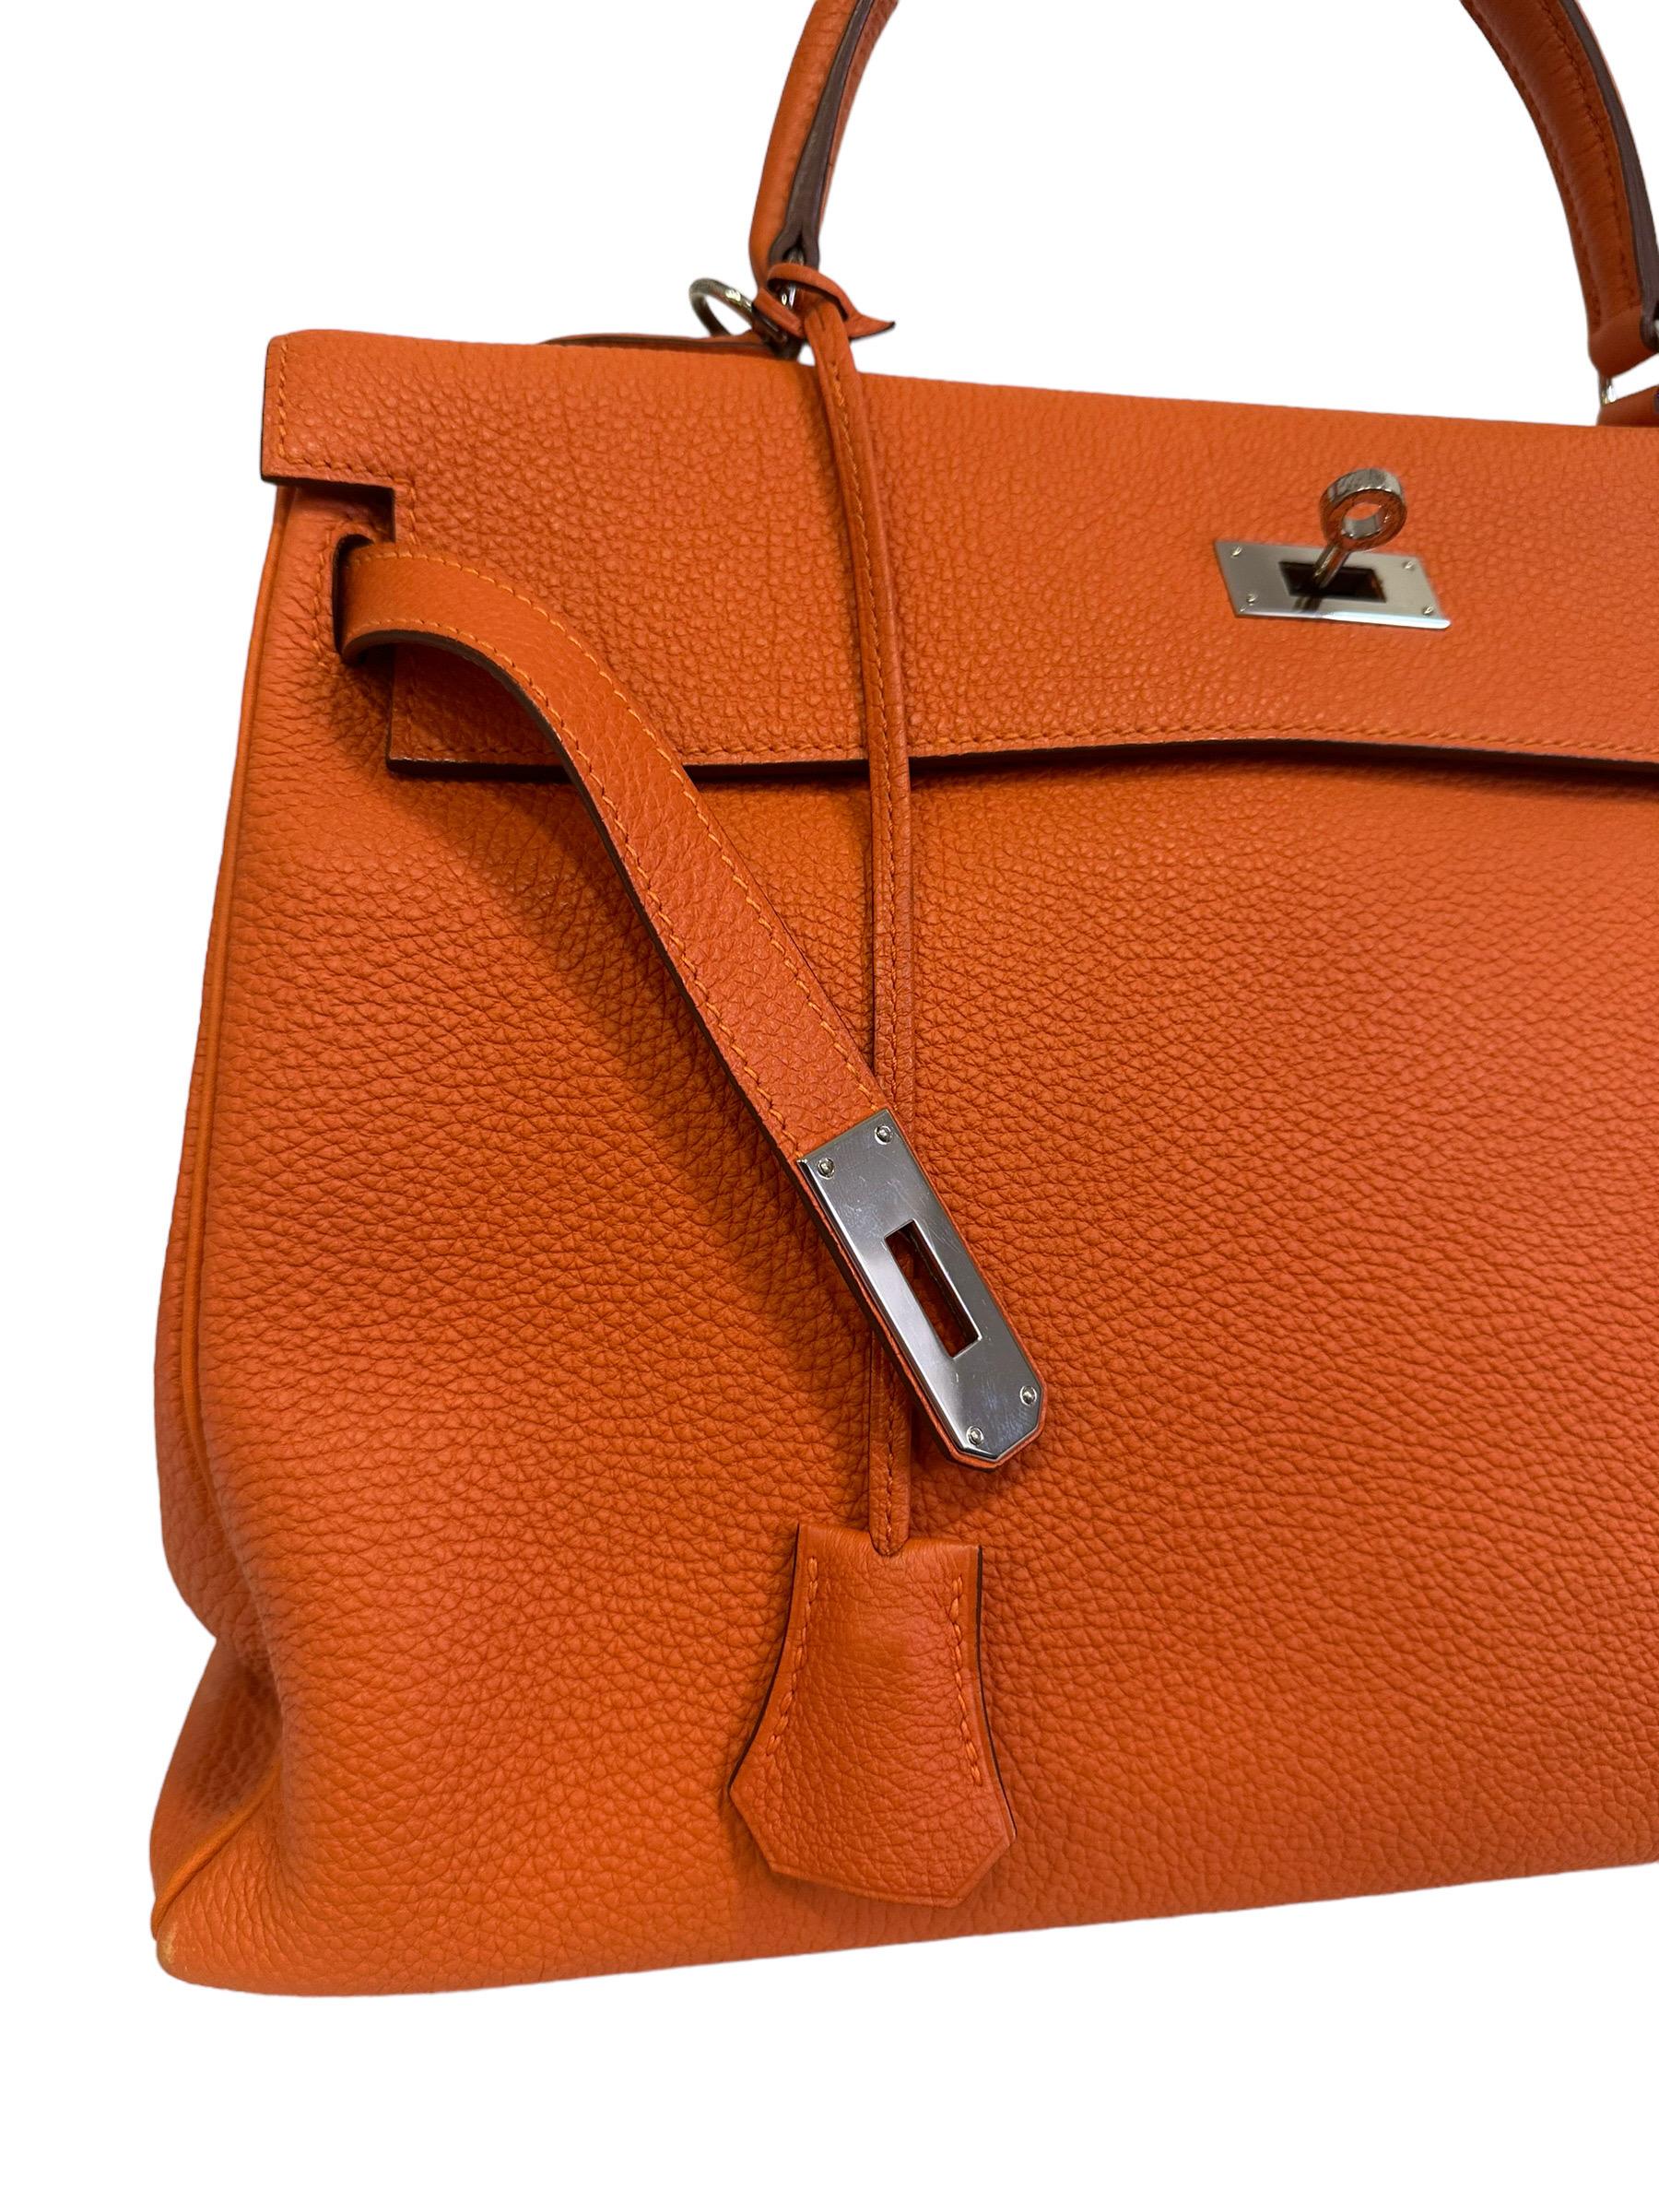 2011 Hermès Kelly 35 Fjord Leather Orange Top Handle Bag  5